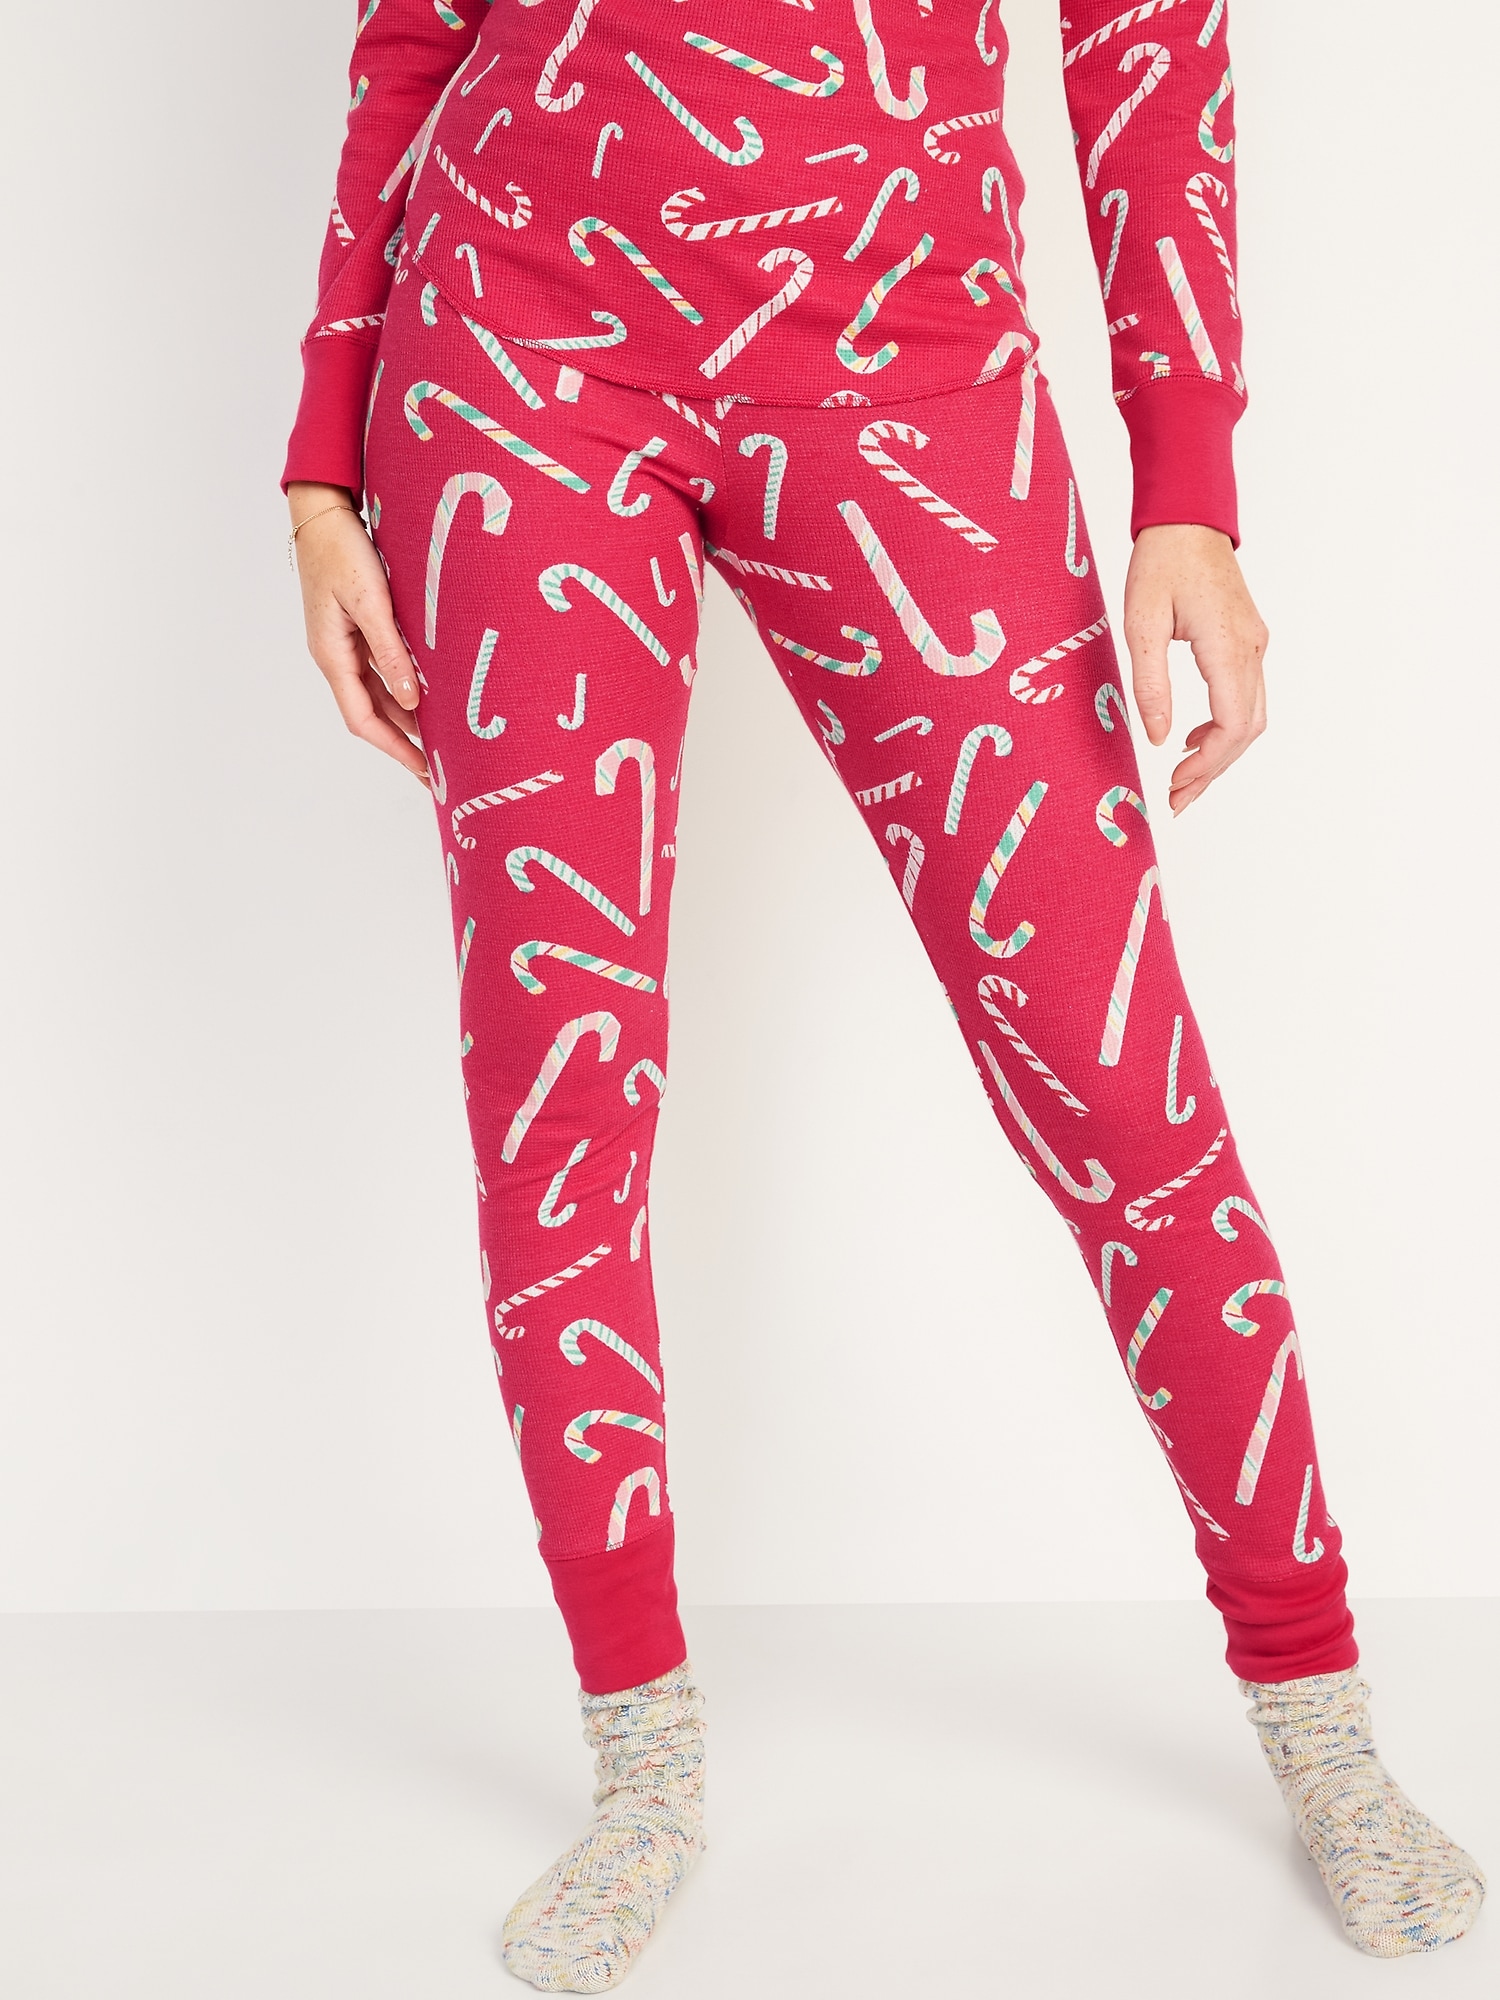 Oldnavy Matching Printed Thermal-Knit Pajama Leggings for Women